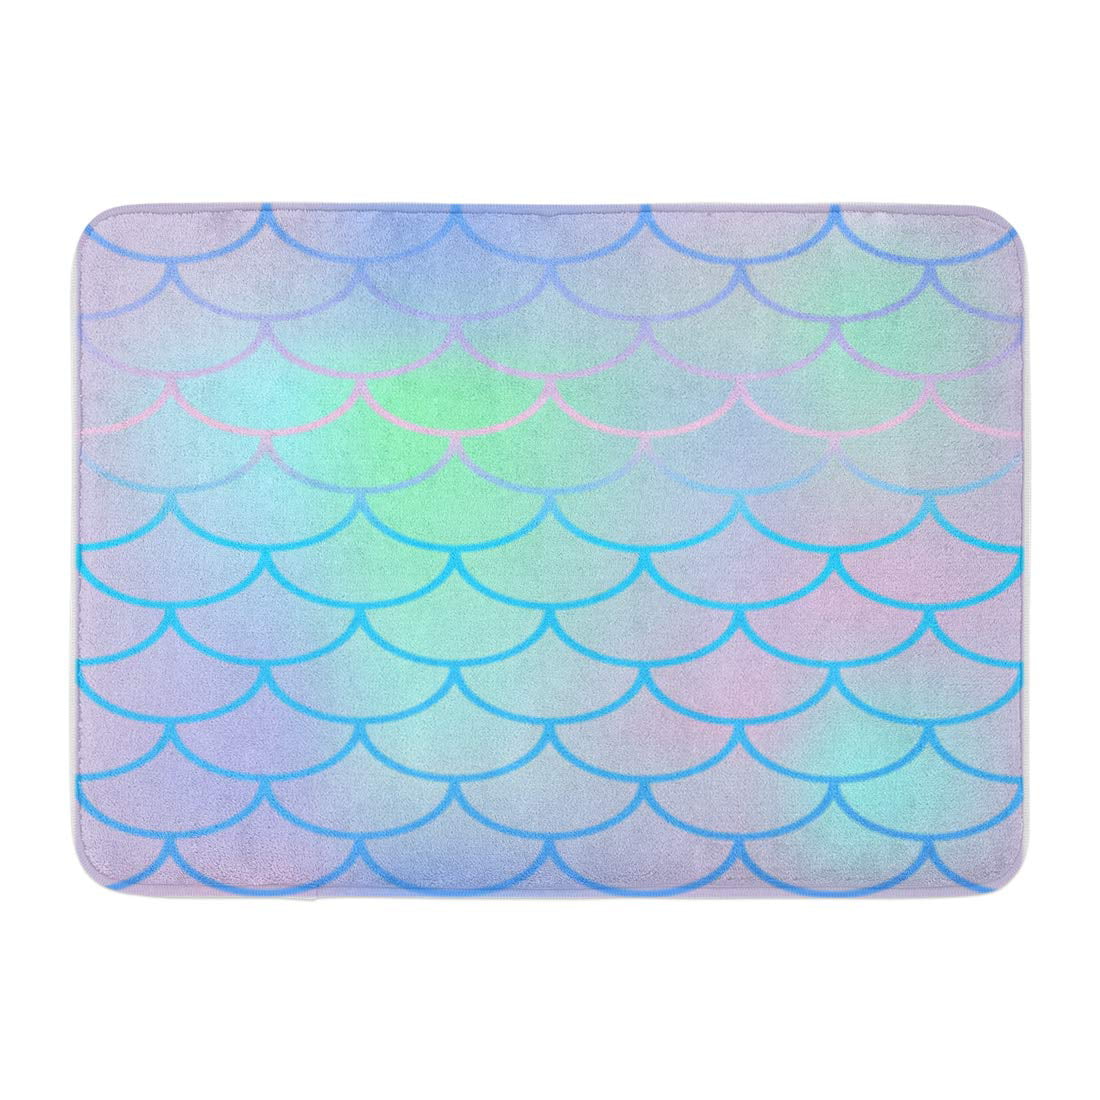 Gradient Mermaid Fish Scales Area Rugs Bedroom Carpet Kitchen Floor Mat Doormat 